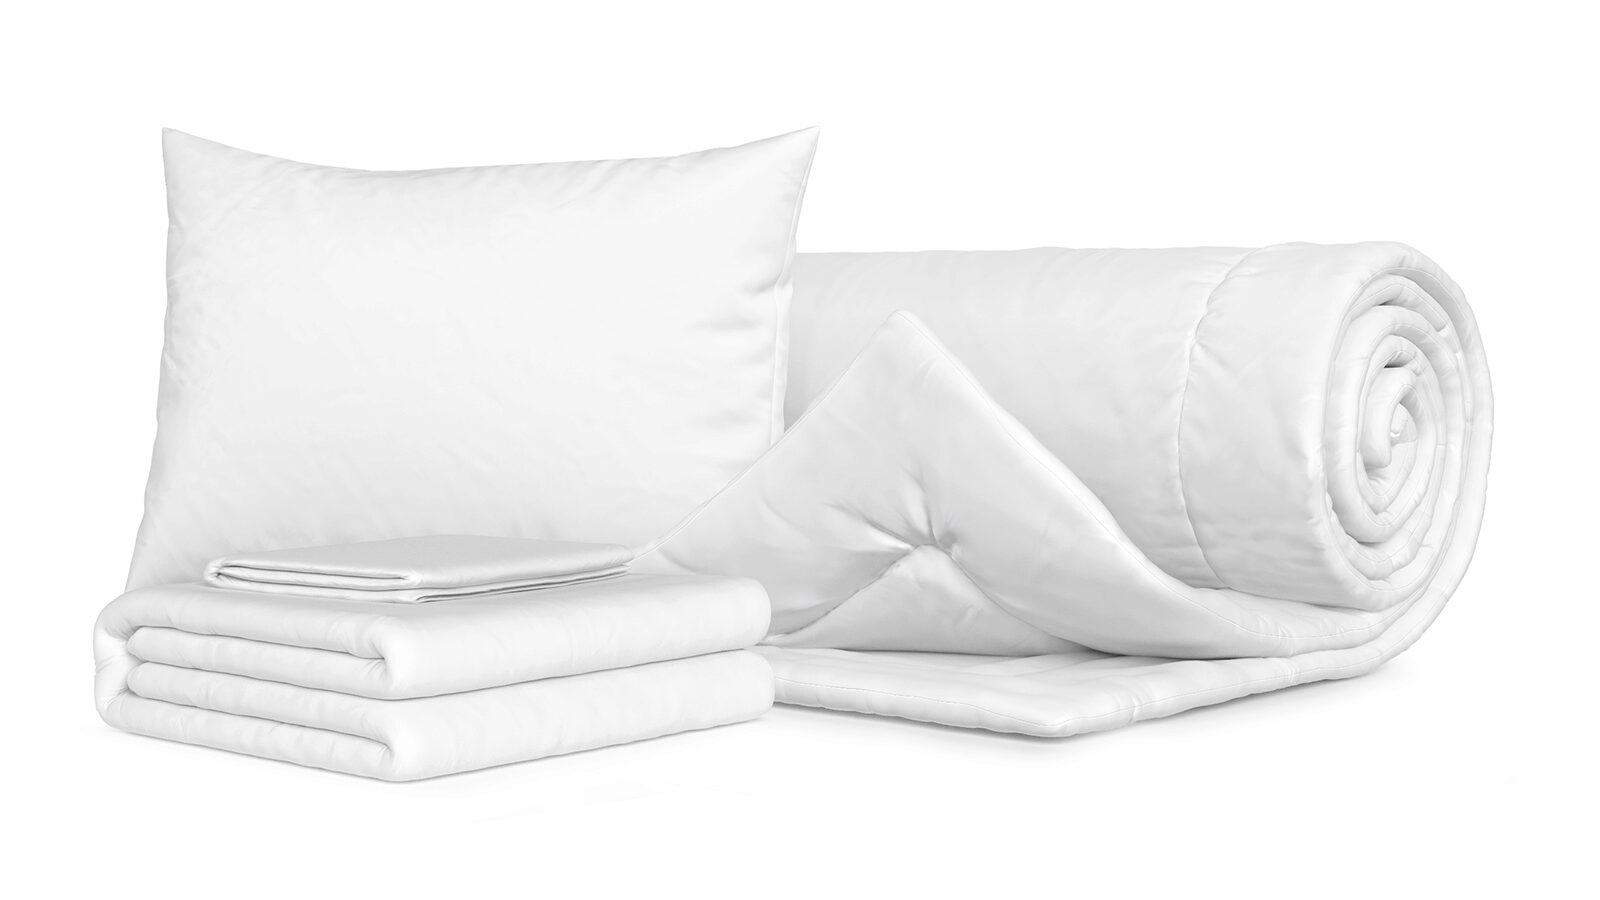 Комплект Одеяло Beat + Подушка Sky + Комплект постельного белья Comfort Cotton, цвет: Белый smartsleep подушка smart comfort детская